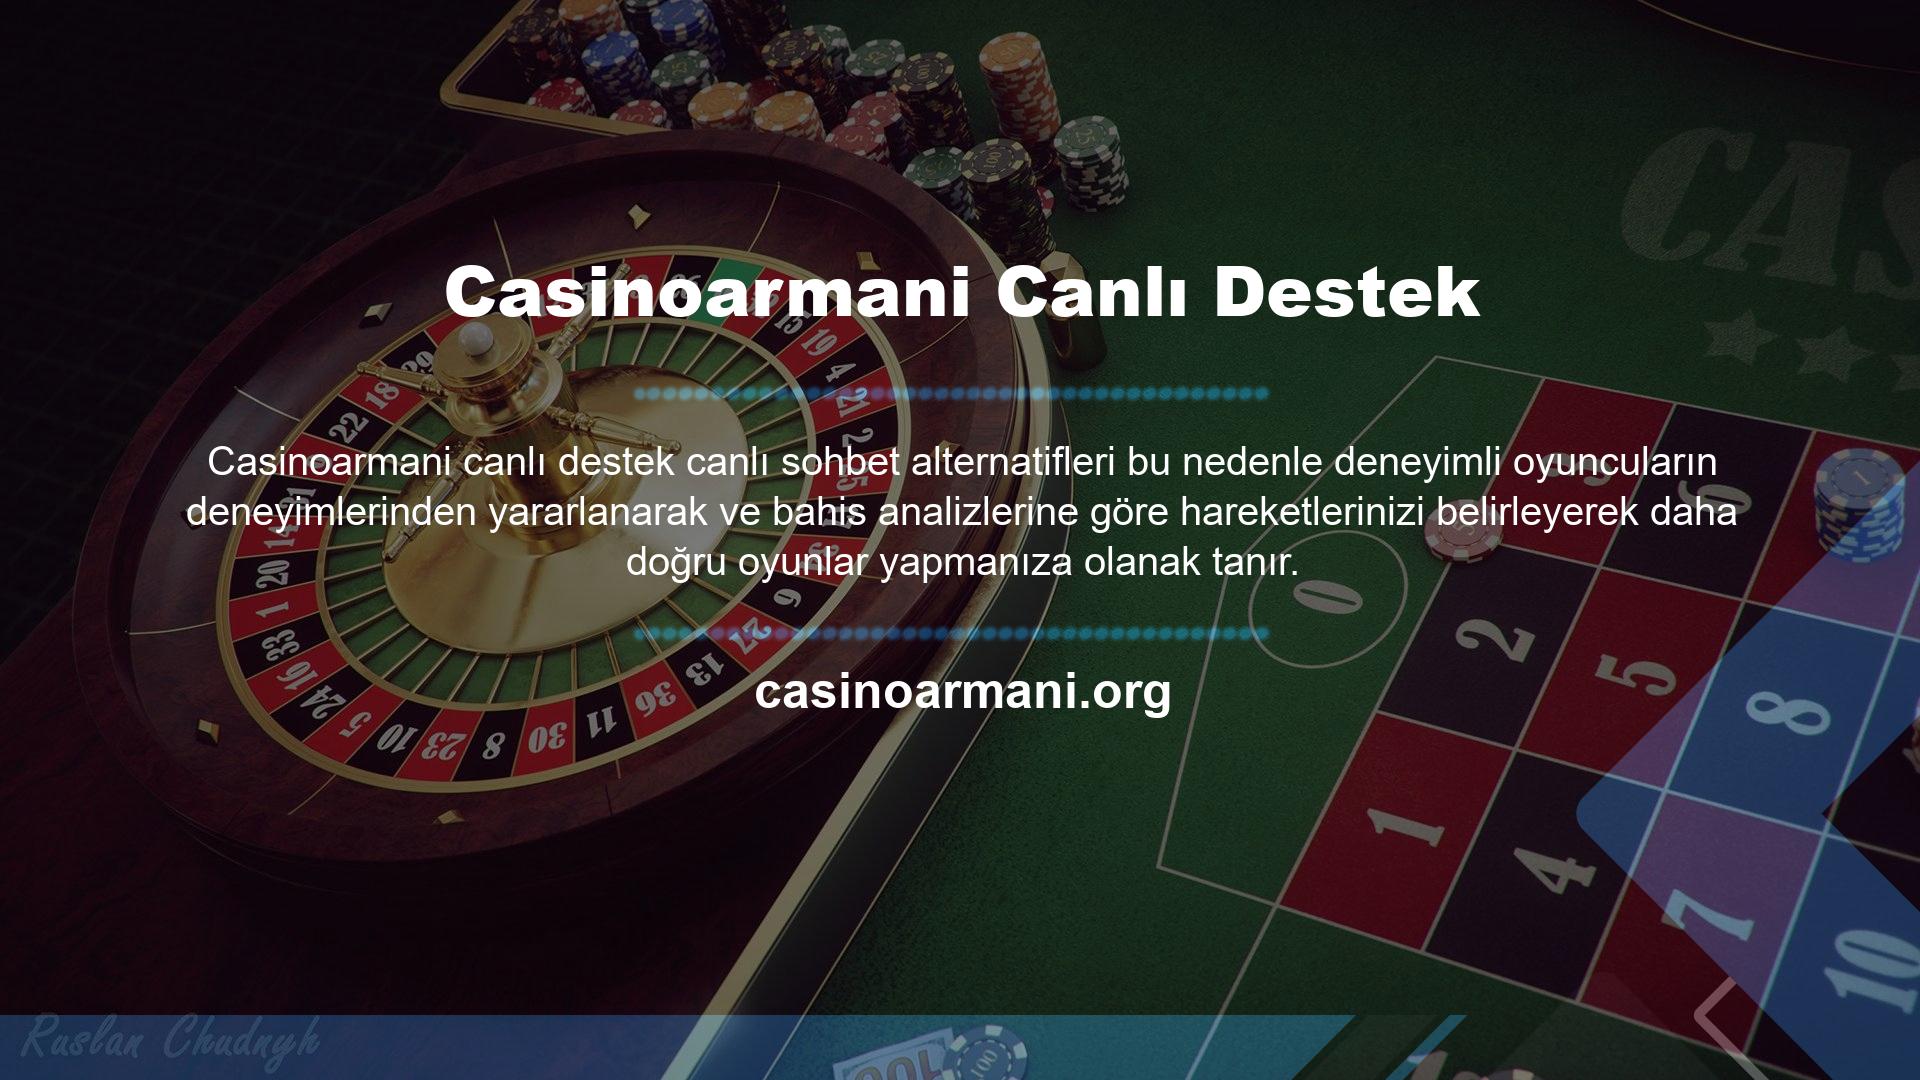 Casinoarmani mobil uygulaması ile cep telefonunuzdan en iyi profesyonel bahis sitelerine bahis yapabilirsiniz